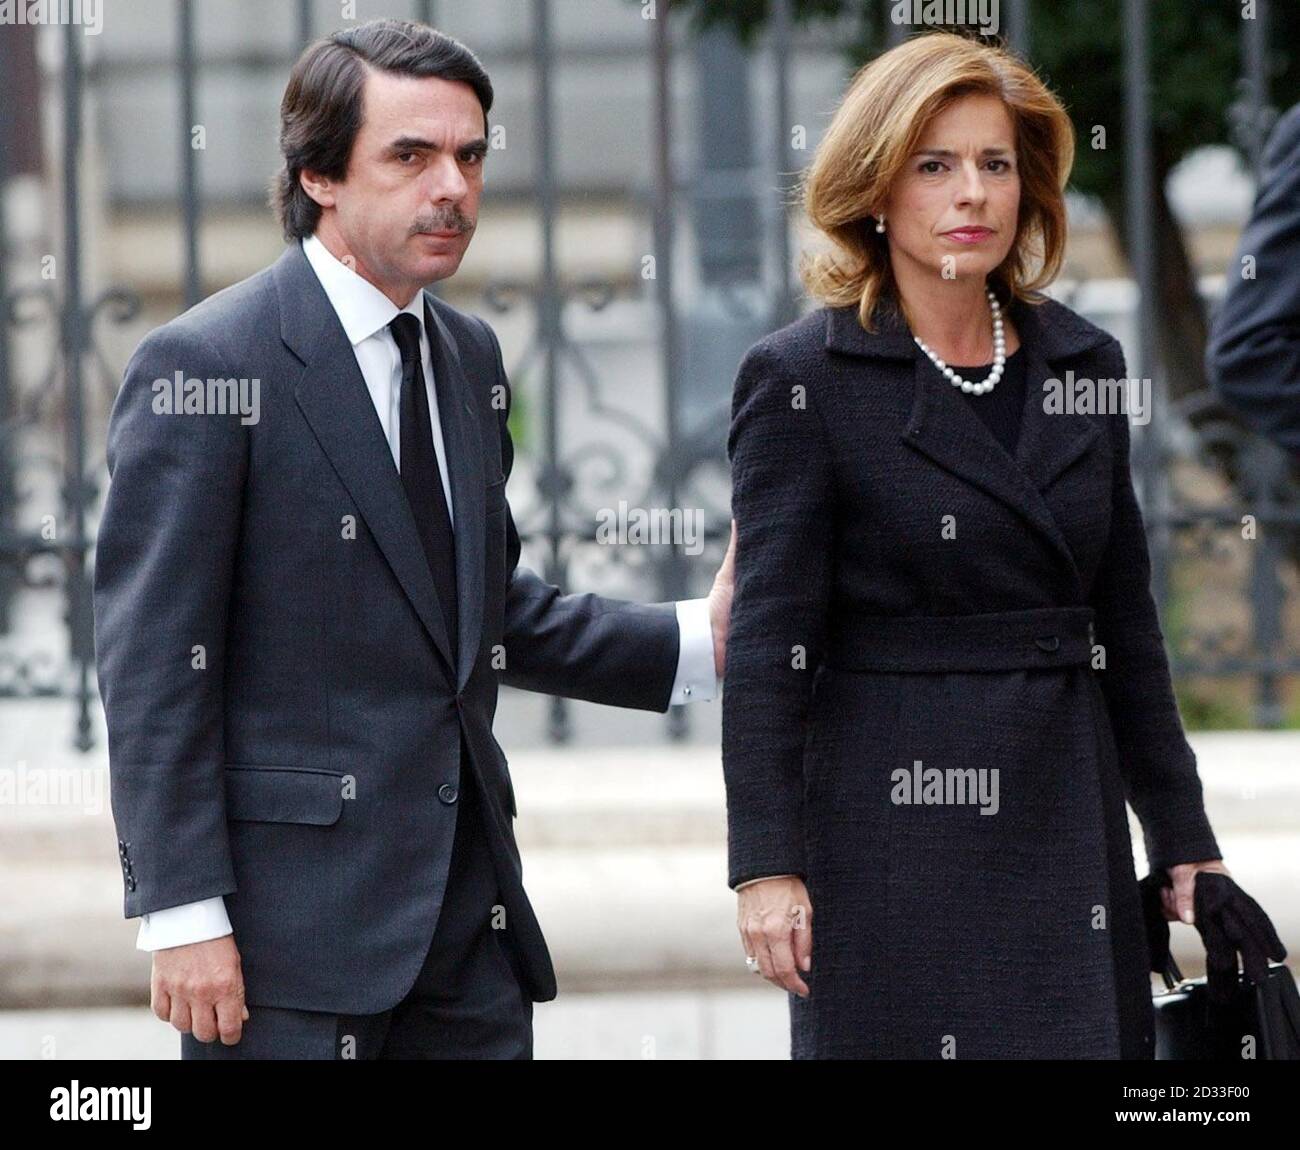 Der scheidende konservative spanische Premierminister Jose Maria Aznar und seine Frau Ana Botella, als sie am 11. März bei der Gedenkmesse in der Madrider Almudena-Kathedrale für die 190 Menschen ankommen, die bei koordinierten Bombenexplosionen an Bord von vier überfüllten S-Bahn-Zügen ums Leben gekommen sind. Stockfoto